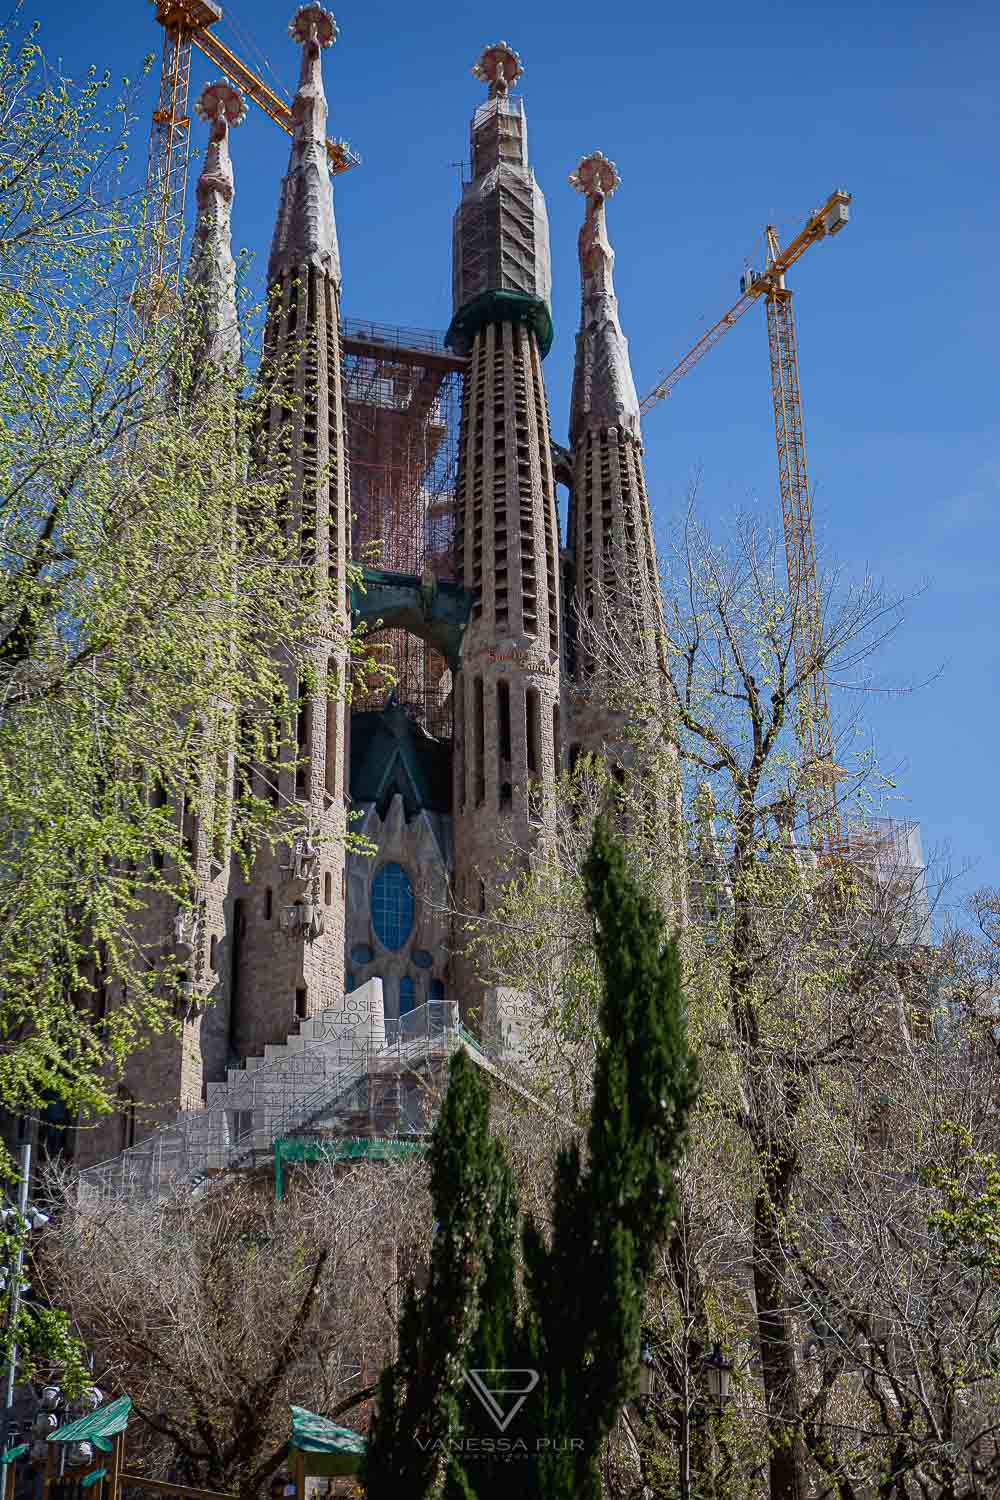 Barcelona - Sagrada Familia Kirche - Aussicht & Tipps zur Kirche, zur Besichtigung der Basilika - Top Sehenswürdigkeiten in Barcelona, die Sagrada Familia. Eintrittspreise und Öffnungszeiten, Aussicht von den Türmen und Tipps zum Besuch - Basílica i Temple Expiatori de la Sagrada Família - Was kostet der Aufstieg auf den Turm? Welcher Turm ist besser? Wann ist die Sagrada geöffnet? Lohnt sich ein Besuch in Barcelona? Barcelona Sehenswürdigkeit und Top10 Tipps - Luxus-Reiseblog - Reiseblogger Deutschlan